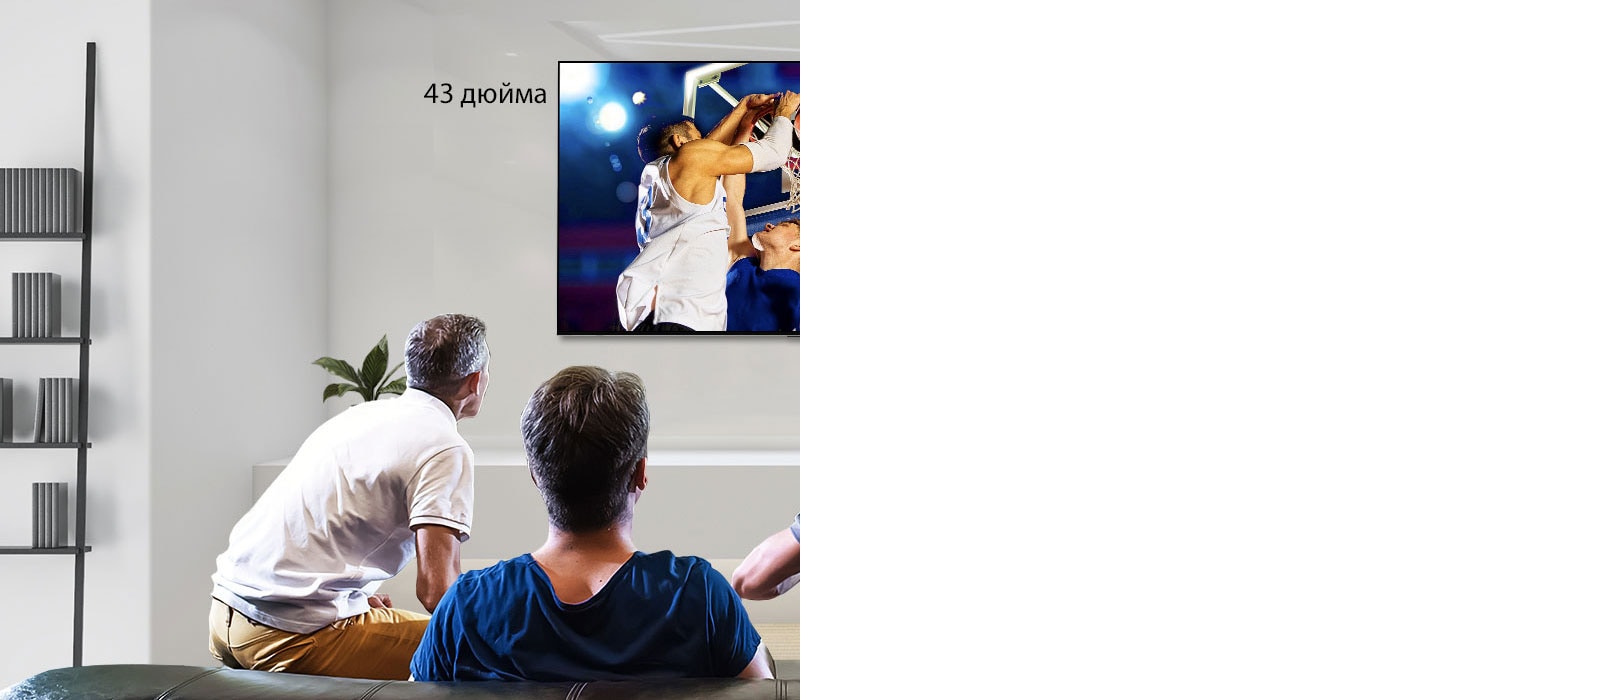 Вид сзади на четырех мужчин, смотрящих баскетбольный матч на закрепленном на стене телевизоре. Прокрутка слева направо показывает разницу в размере между 43-дюймовым и 86-дюймовым экраном.